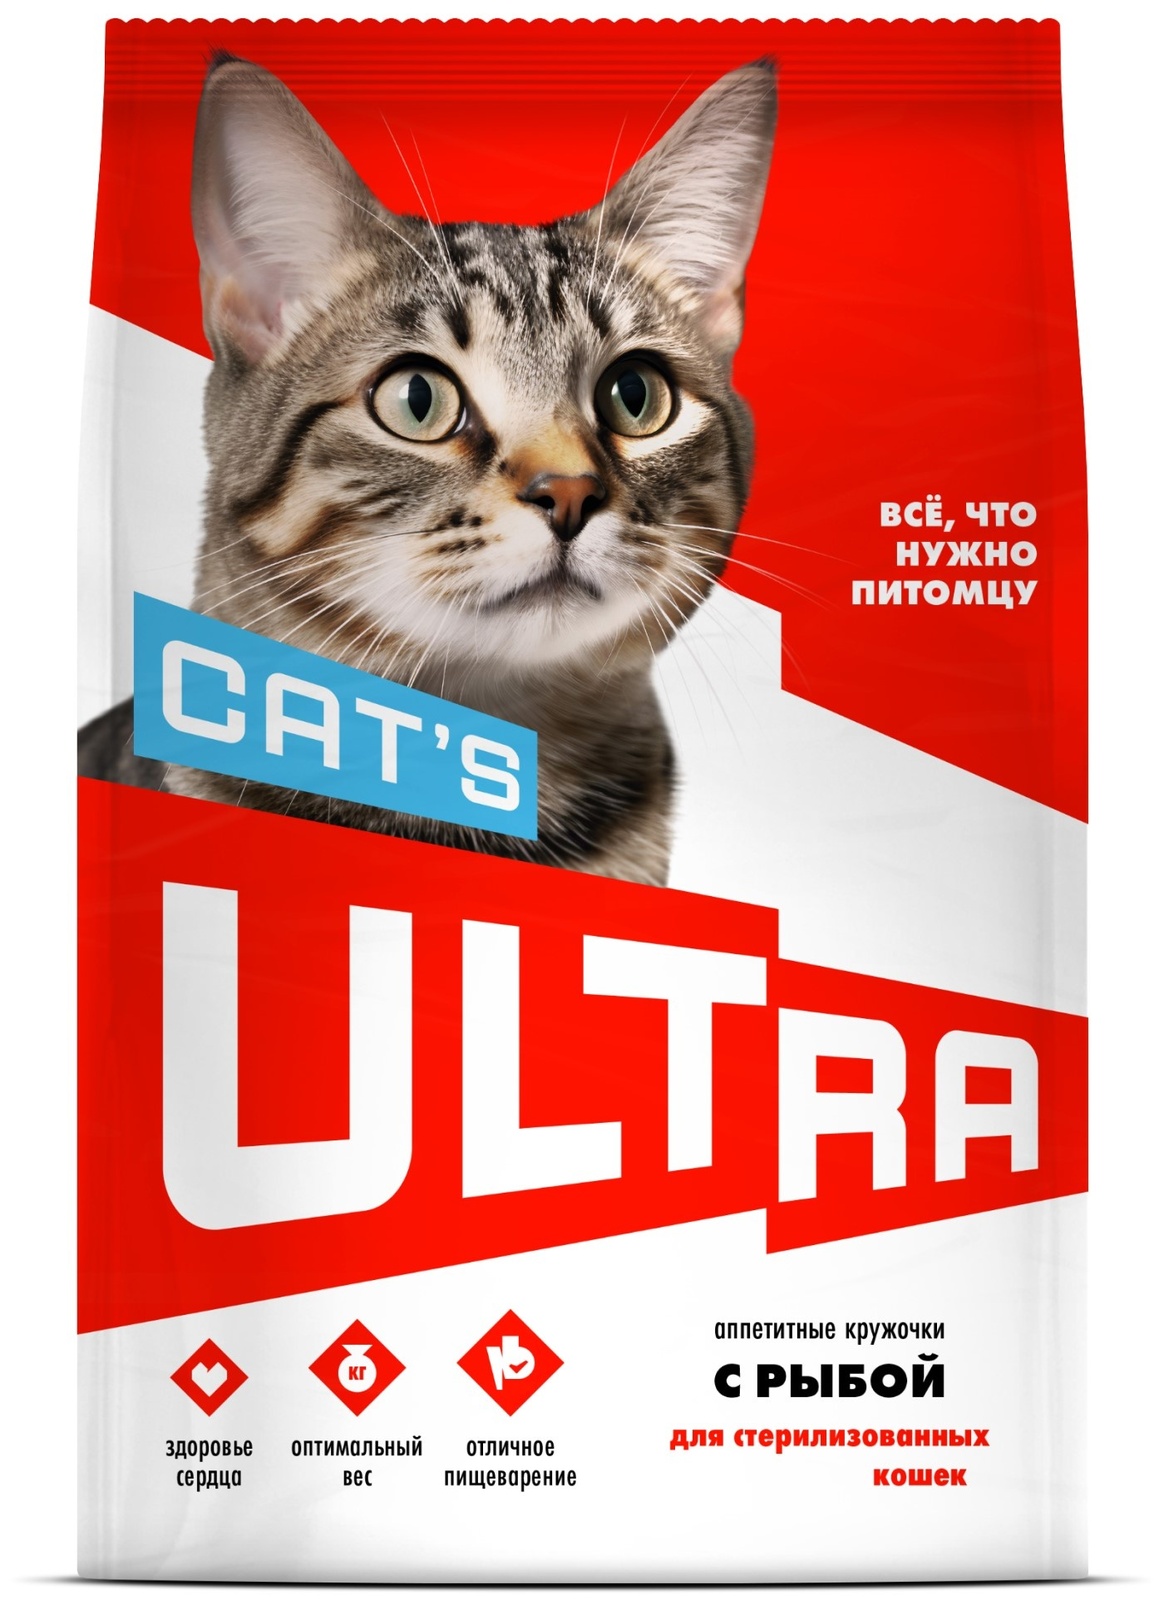 ULTRA ULTRA аппетитные кружочки с рыбой для стерилизованных кошек (3 кг) ultra ultra аппетитные кружочки с говядиной для стерилизованных кошек 3 кг